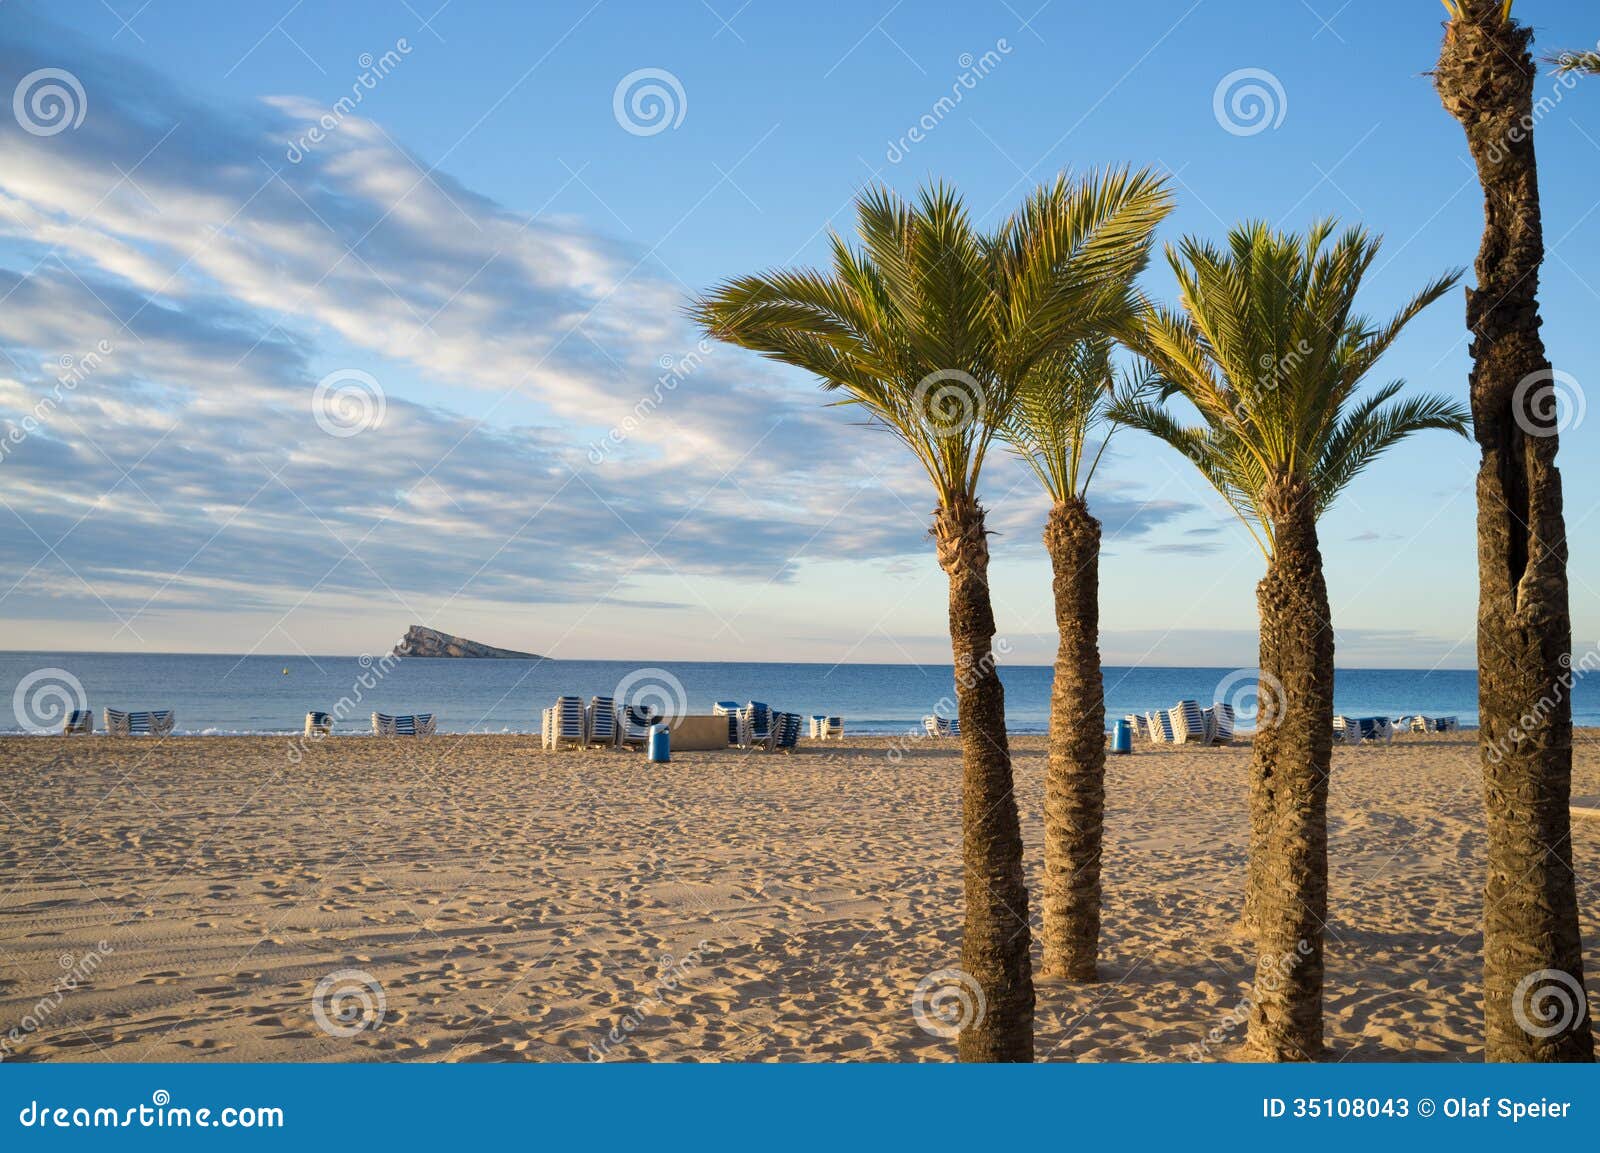 palm trees on benidorm beach